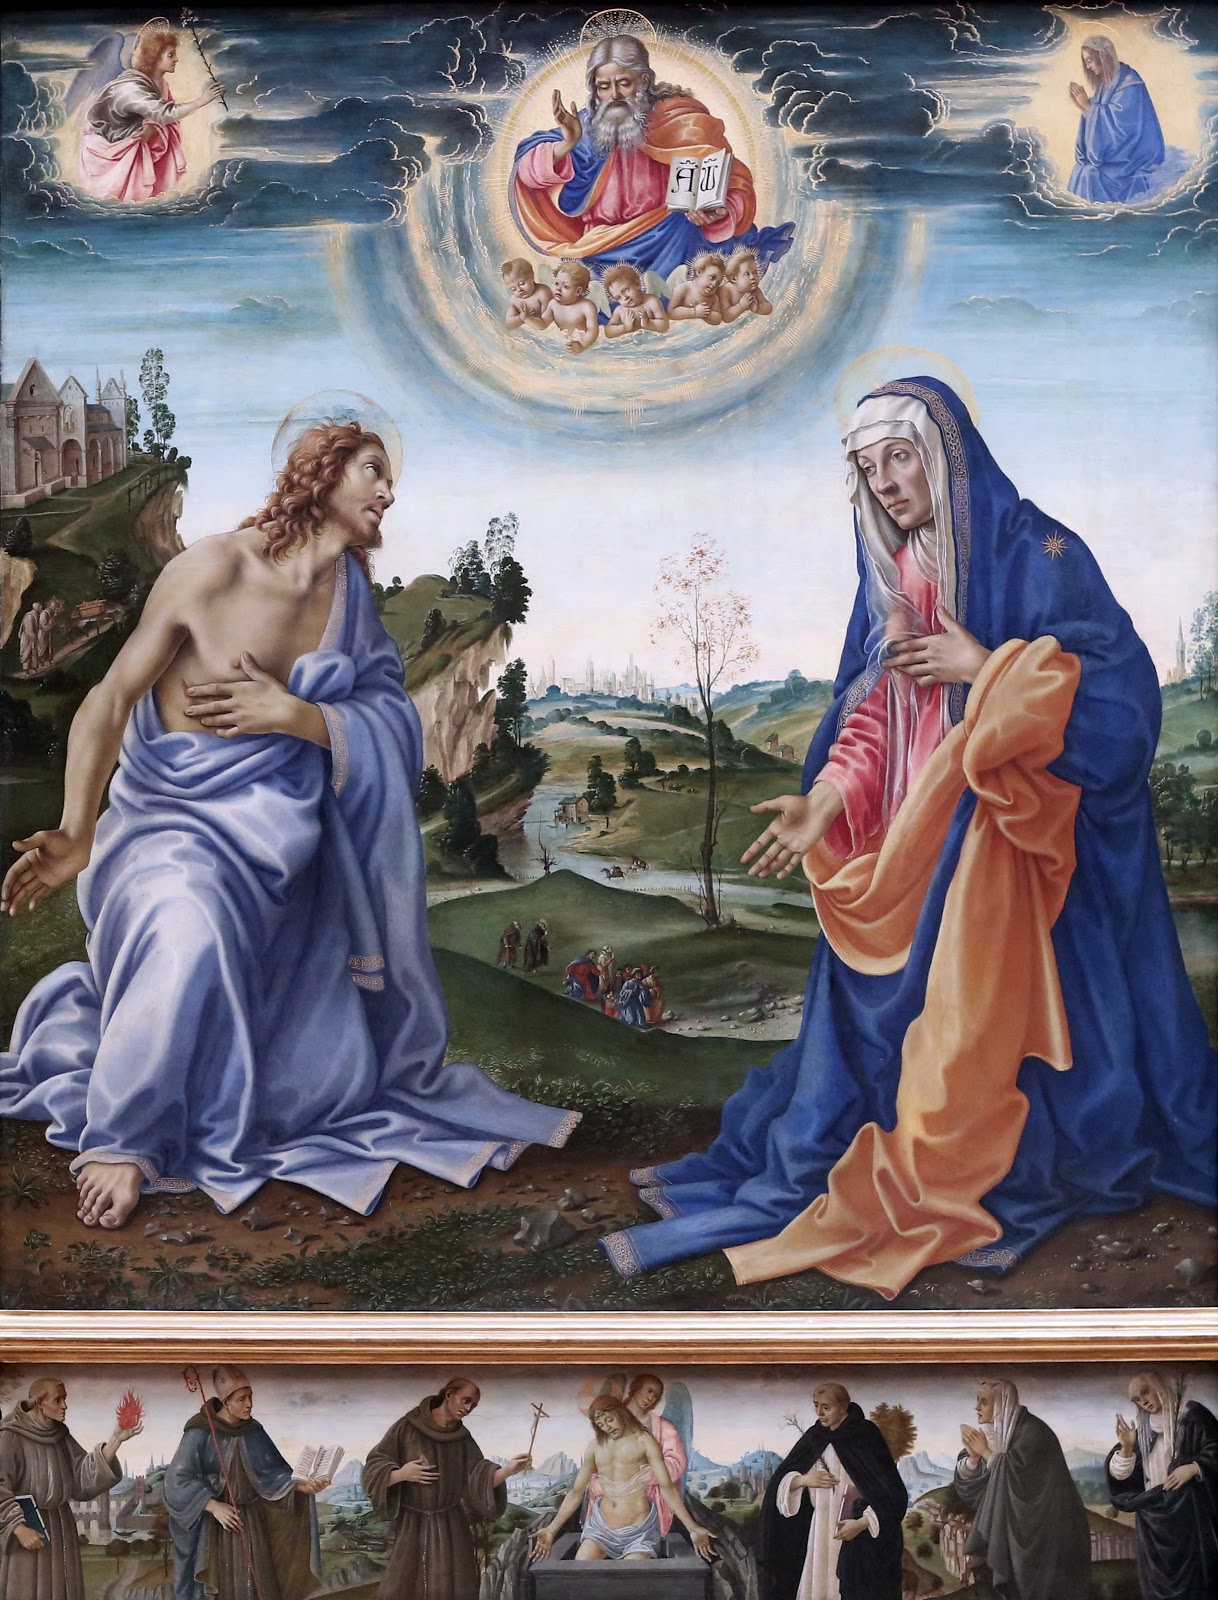 Filippino+Lippi-1457-1504 (11).jpg